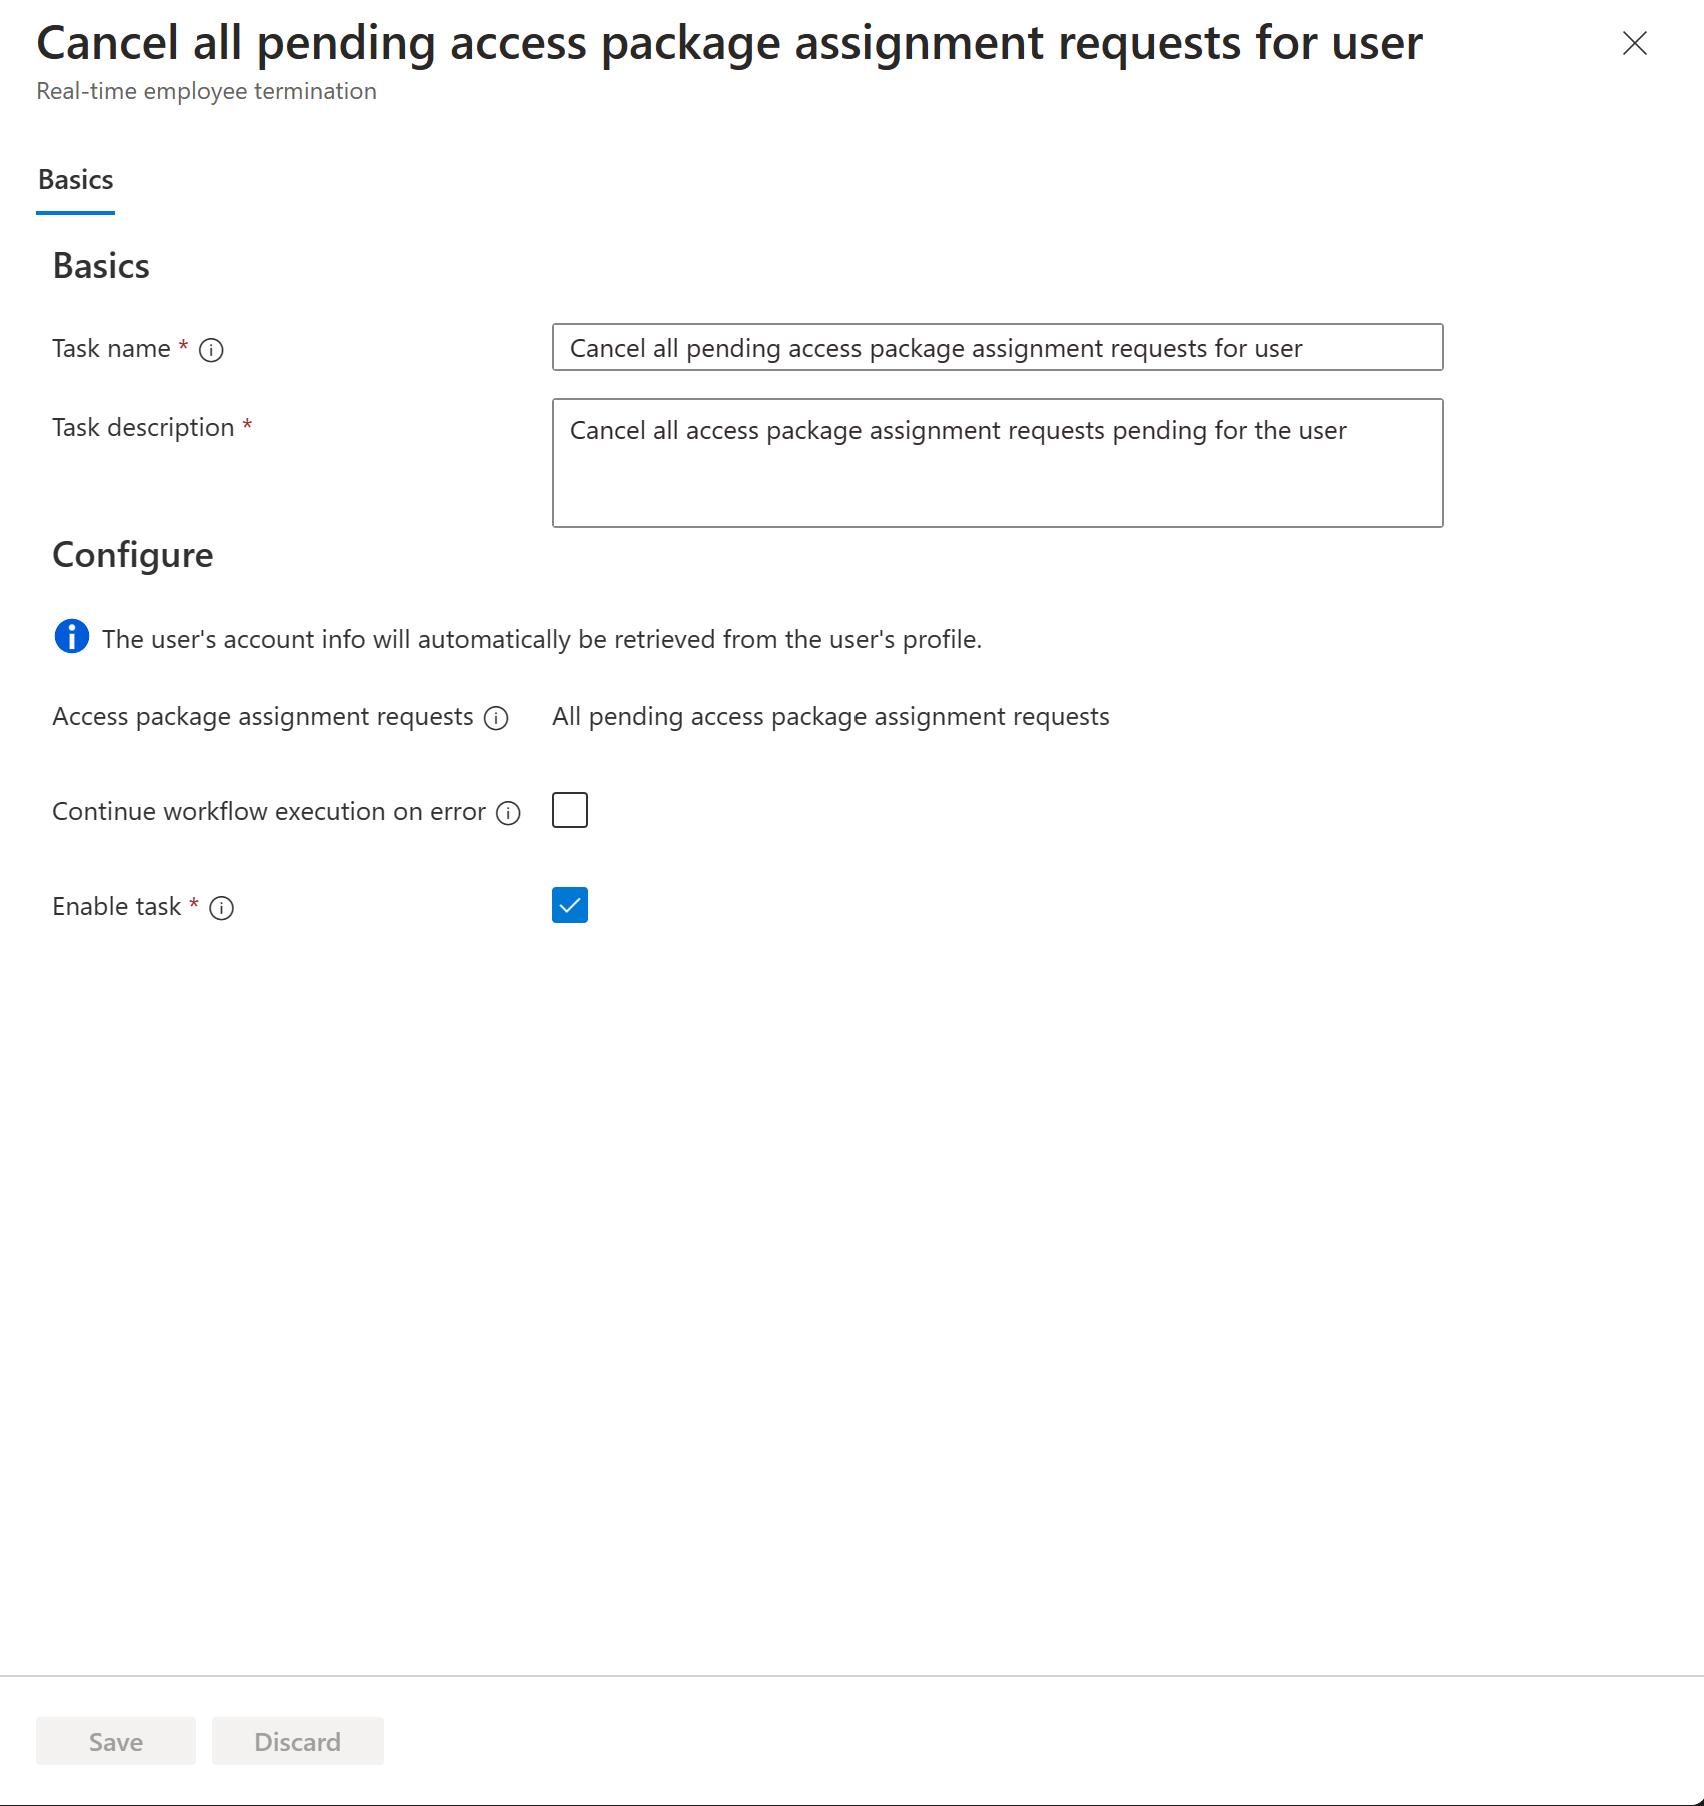 Captura de tela das solicitações de cancelamento de todas as atribuições de pacotes de acesso pendentes para uma tarefa do usuário.